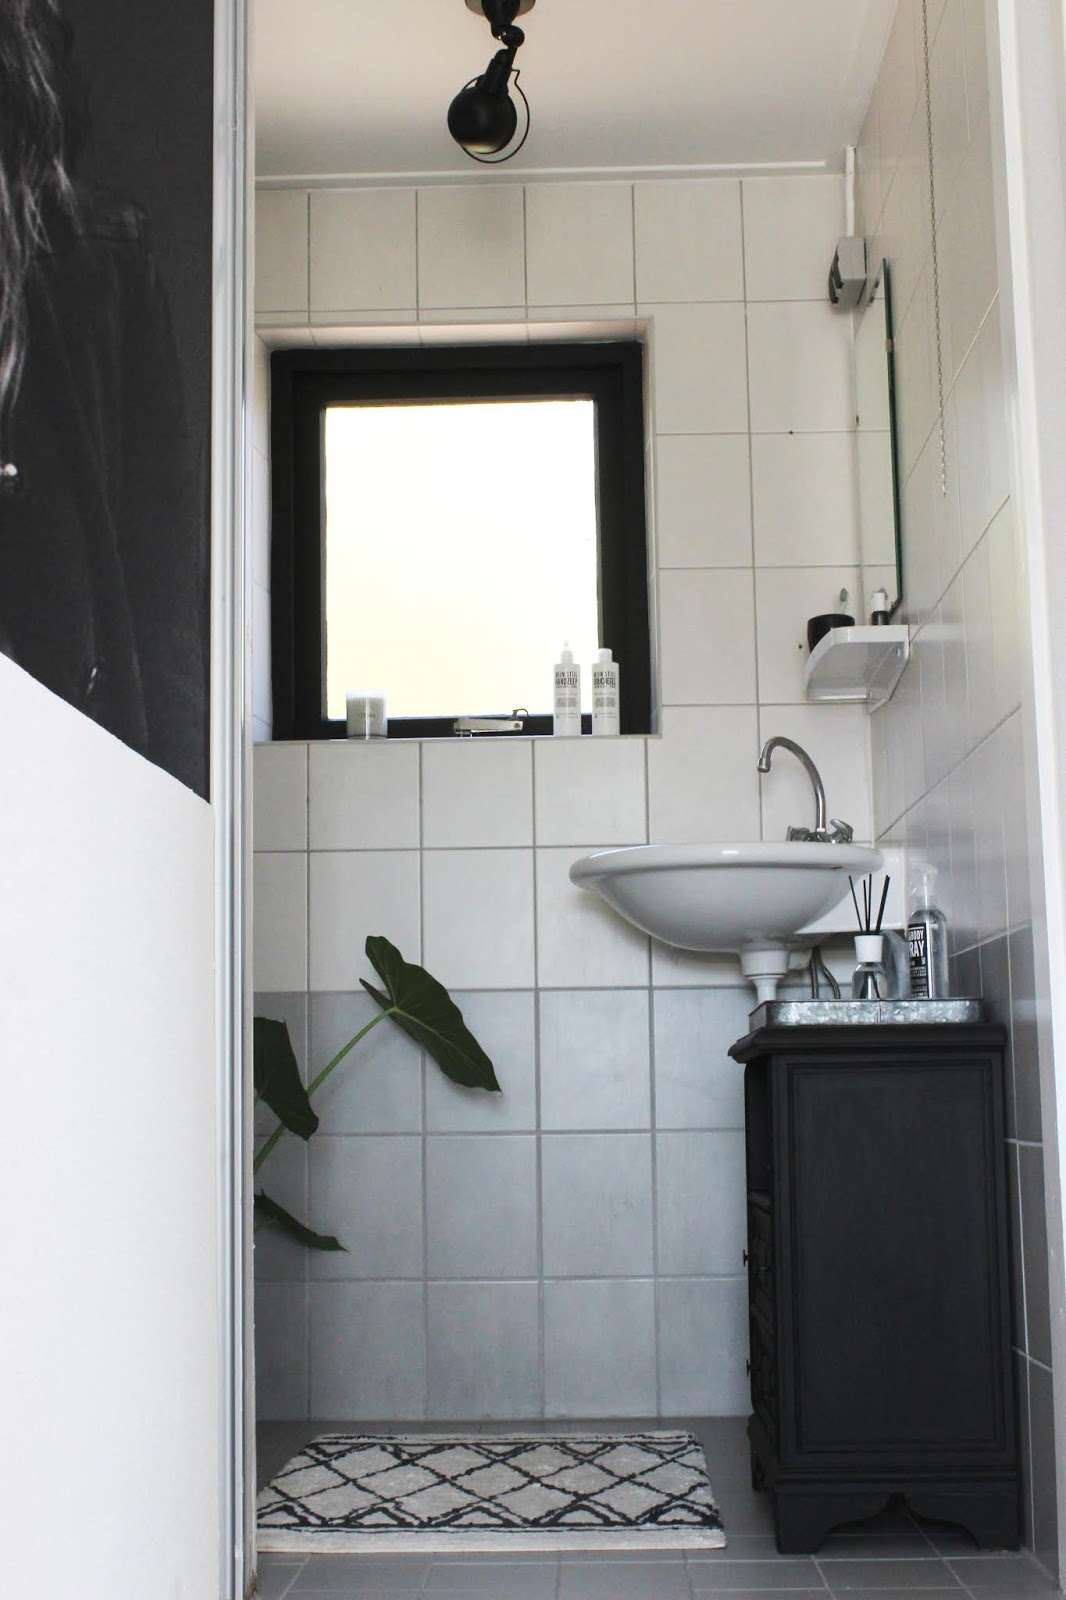 Uitgelezene Huisjeaandehaven: Low budget badkamer make-over OS-35